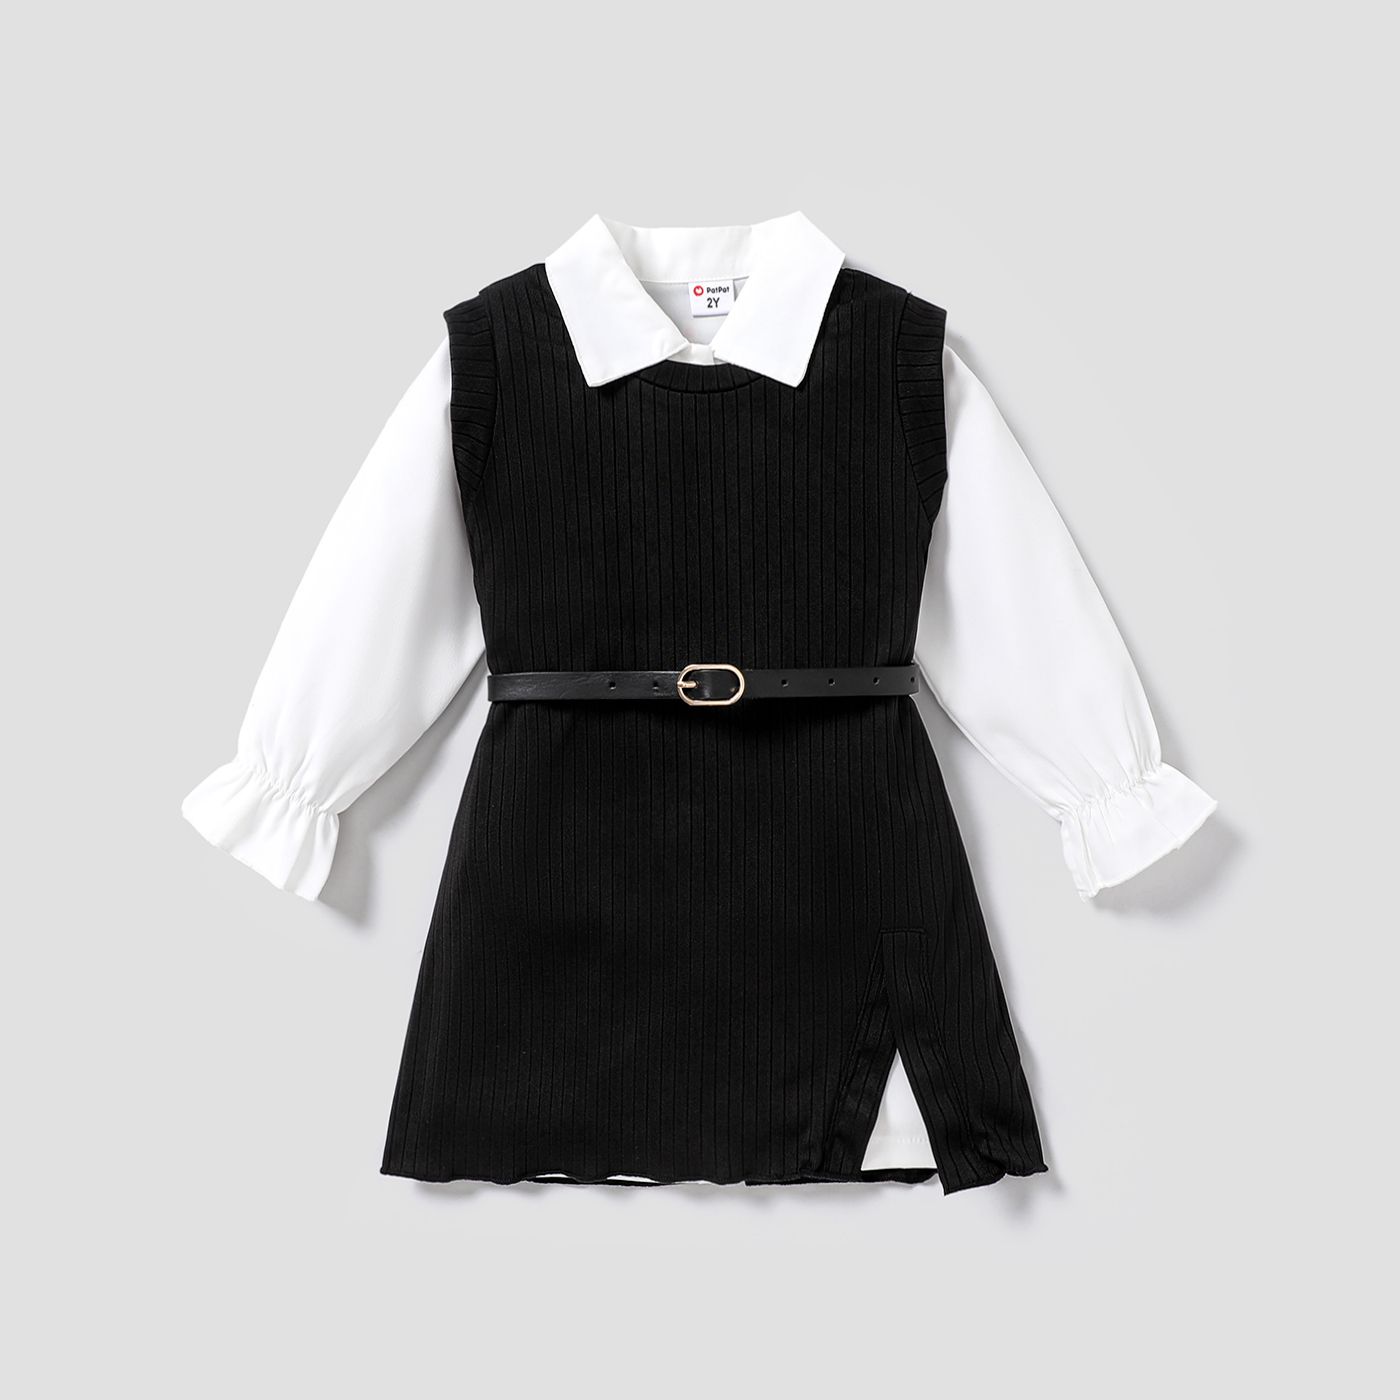 Fille En Bas âge D'avant-garde 3pcs Costume-Robe Unie - Épaisseur Moyenne - 100% Polyester - Style D